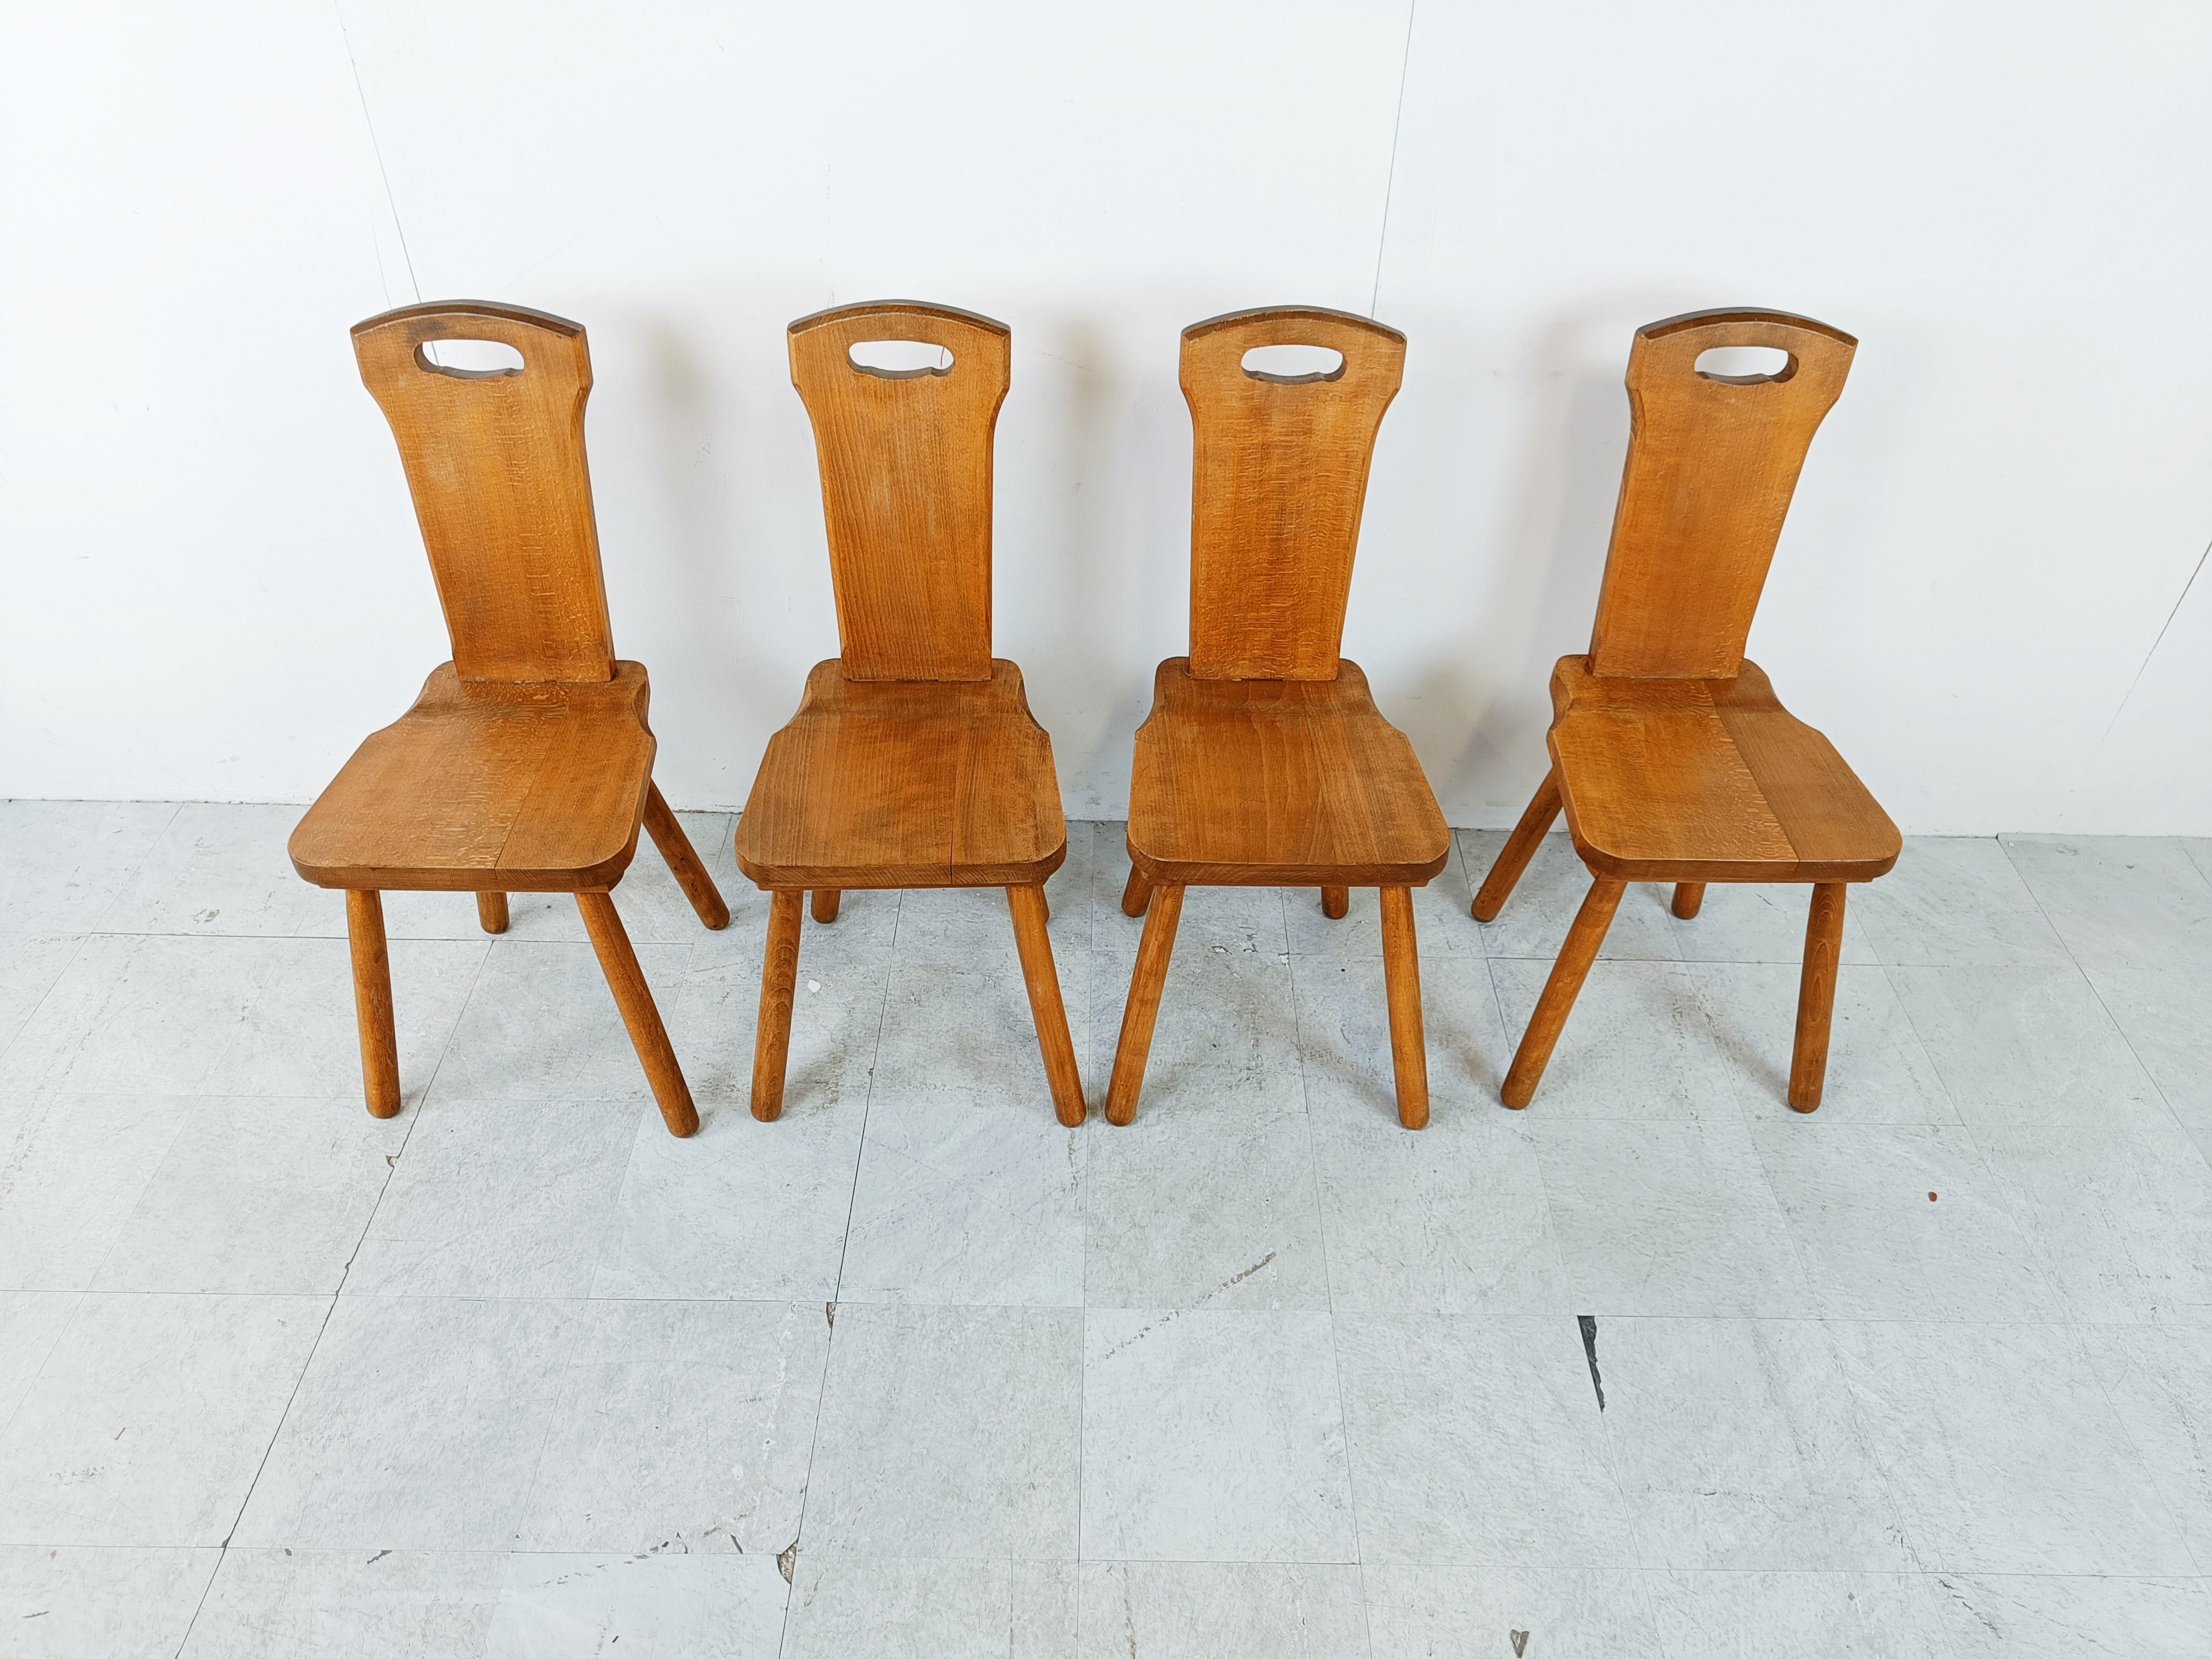 Vintage Eiche massiv schwedische Esszimmerstühle

Diese rustikalen Stühle wurden in Handarbeit hergestellt.

Guter Zustand mit normalen altersbedingten Gebrauchsspuren

1960er Jahre - Schweden

Abmessungen:
Höhe: 96cm/37.79